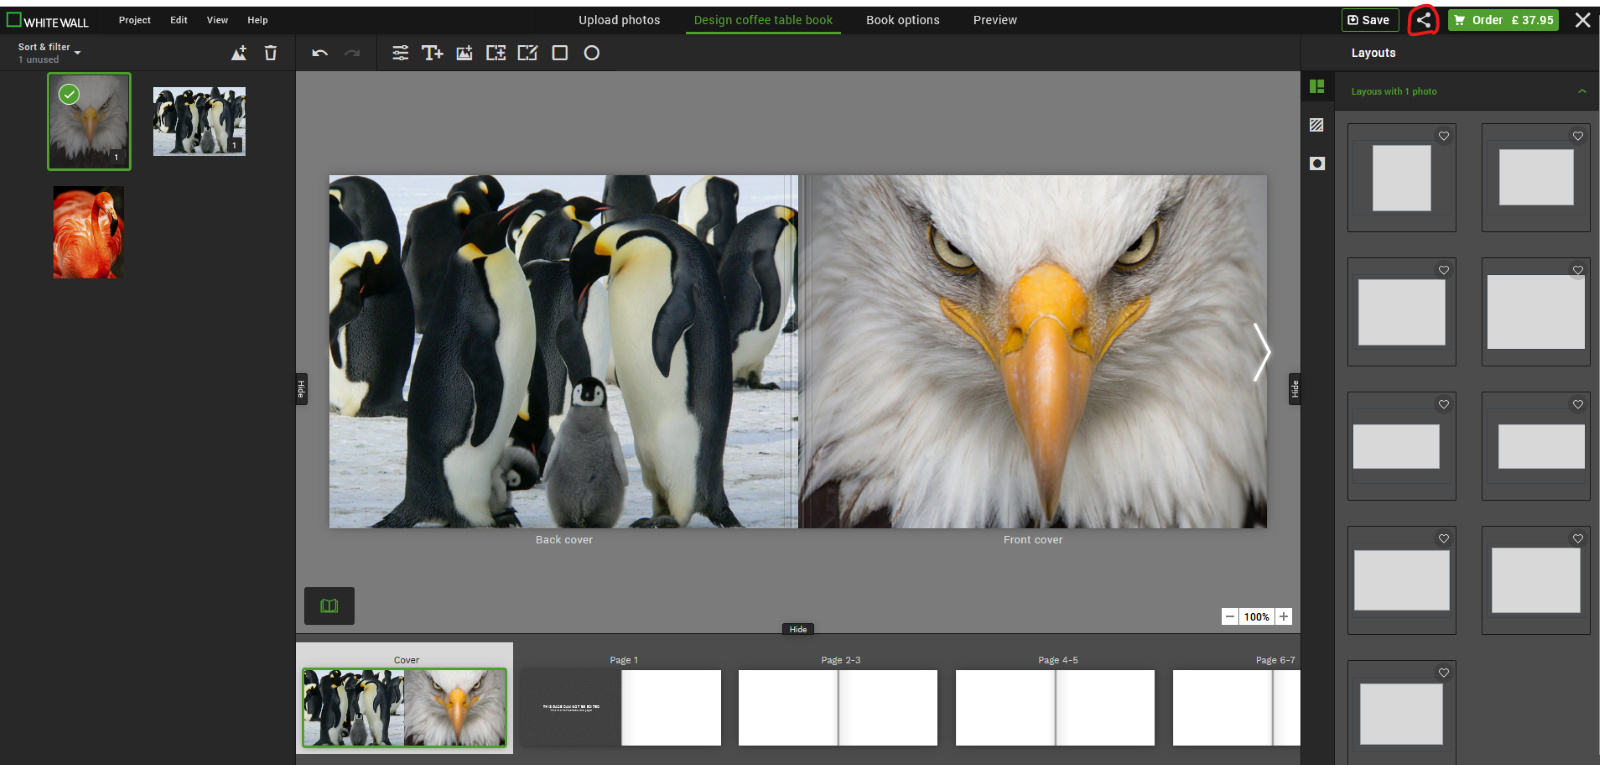 Ein Bild, das Multimedia-Software, Screenshot, Grafiksoftware, Pinguin enthält.

Automatisch generierte Beschreibung